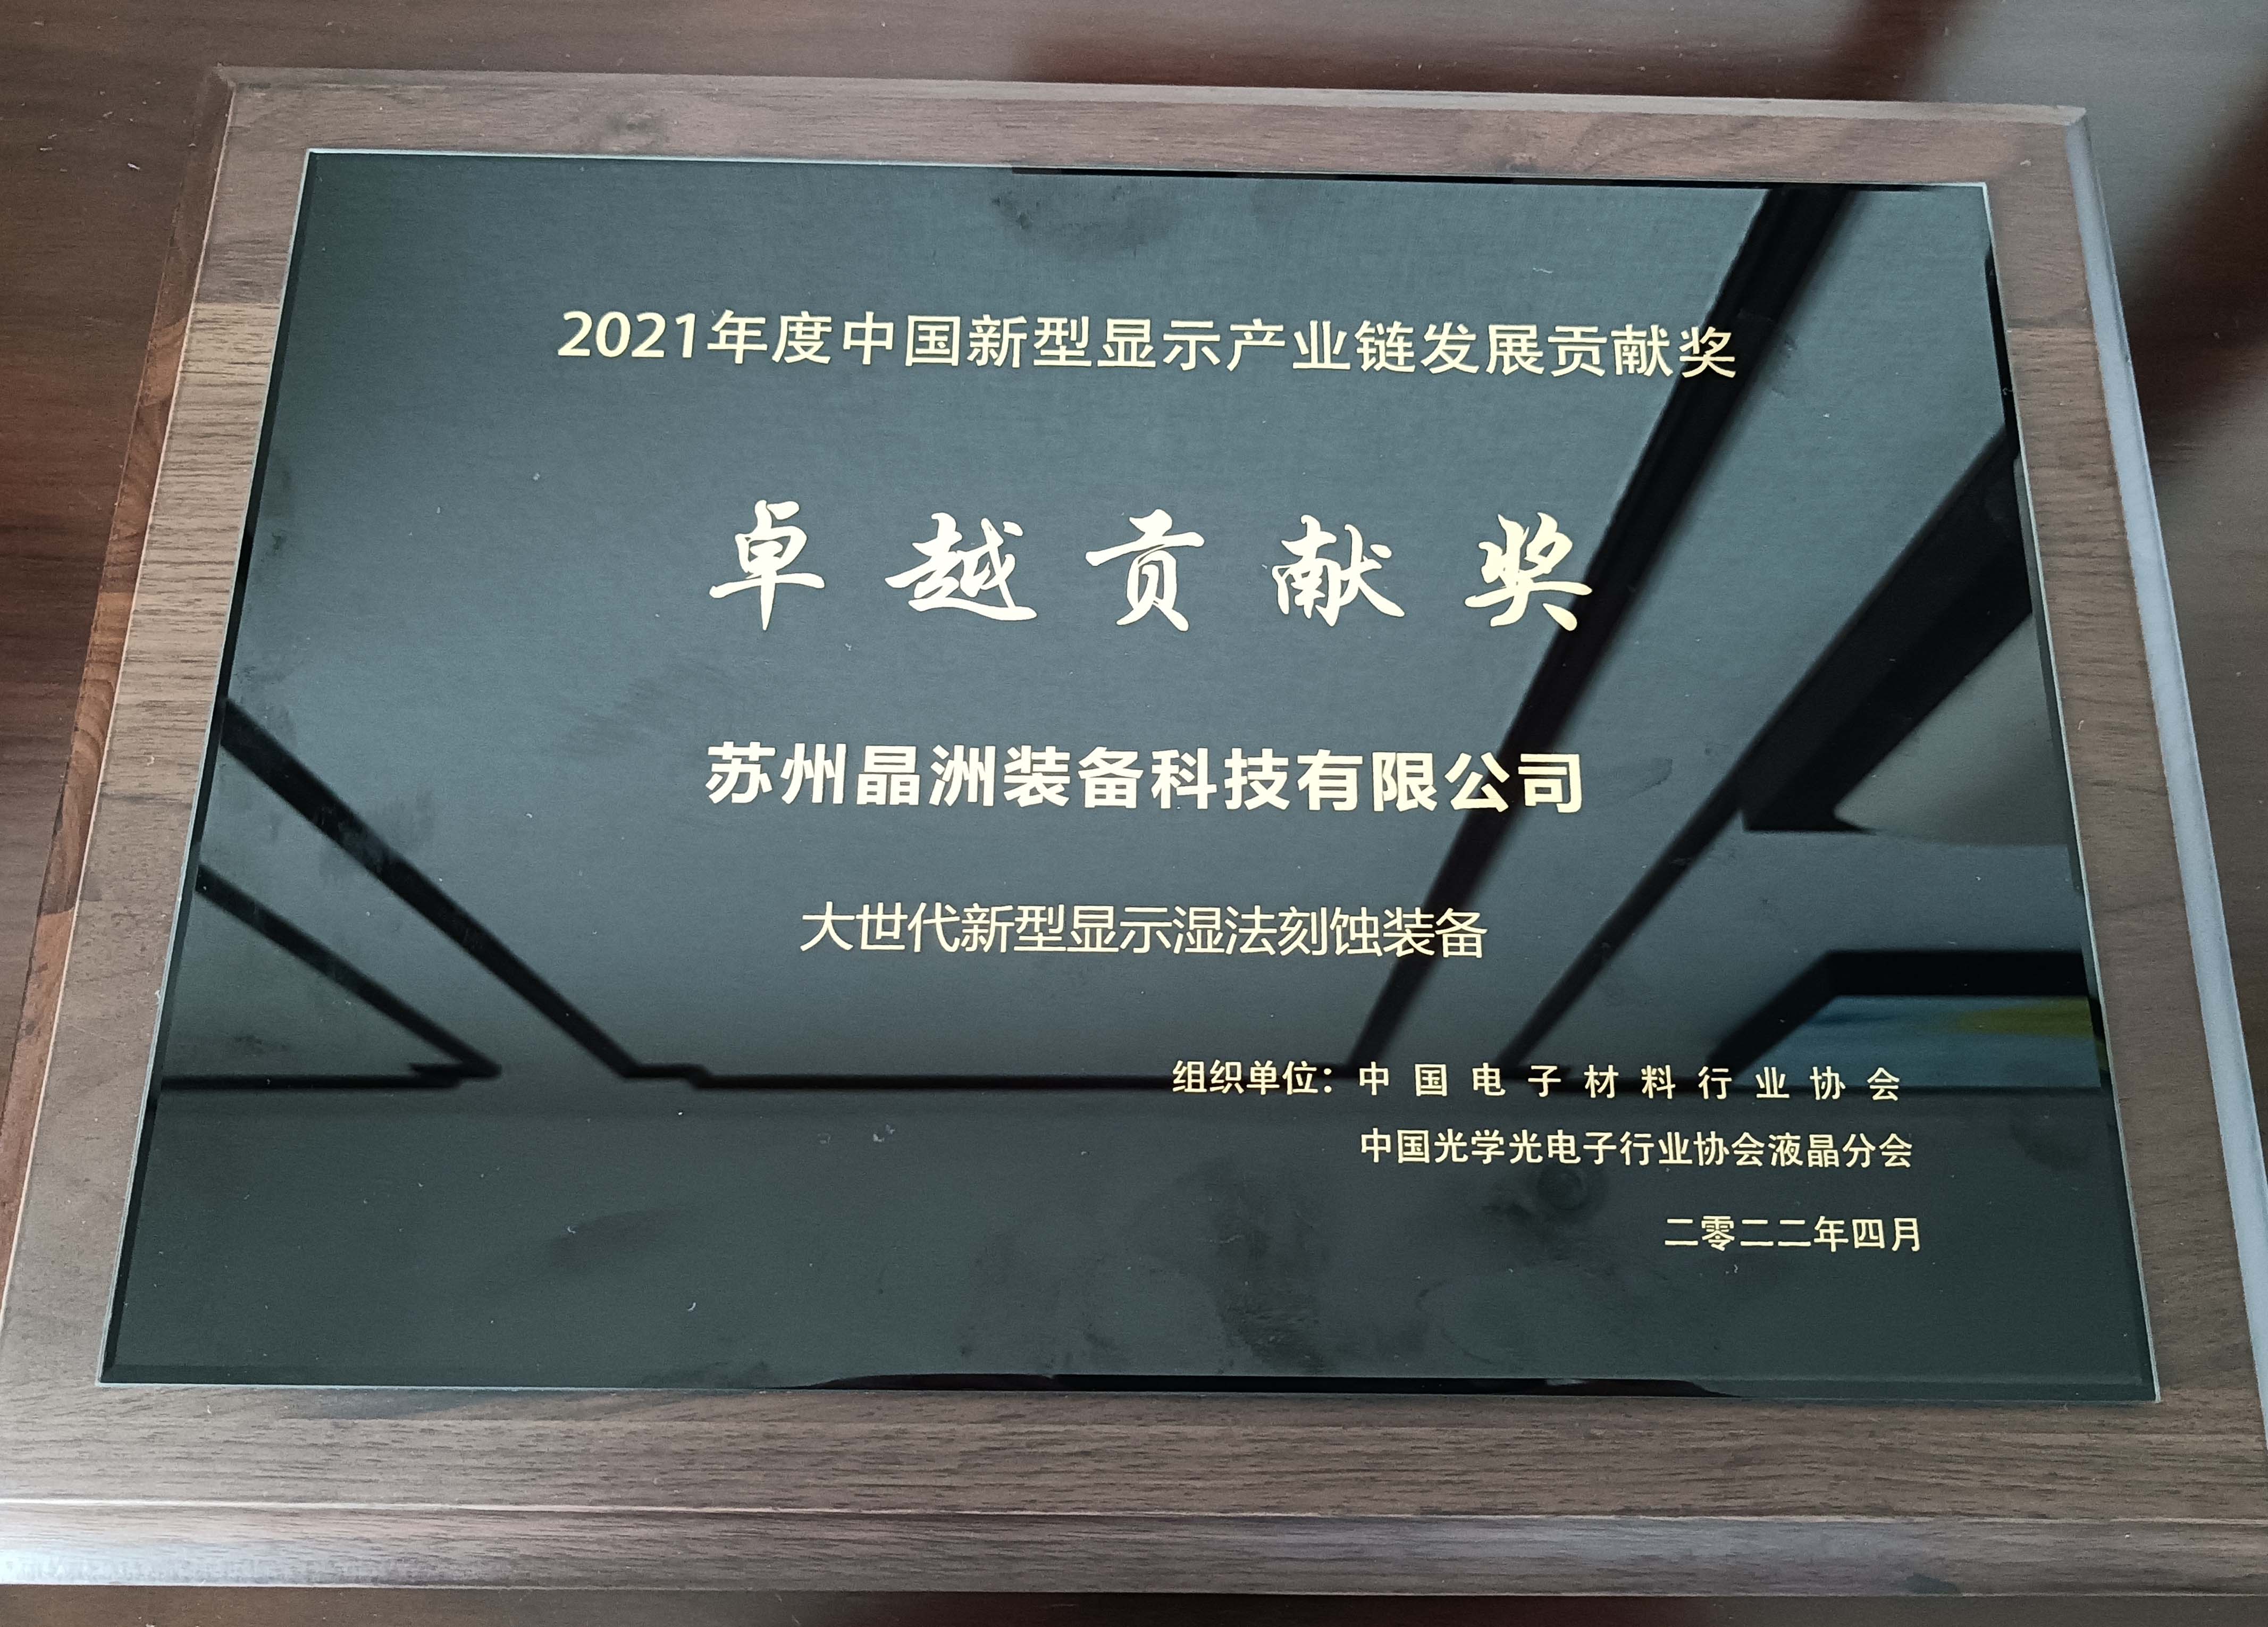 尊龙凯时装备荣获2021年度中国新型显示工业链卓越孝顺奖并揭晓主题演讲